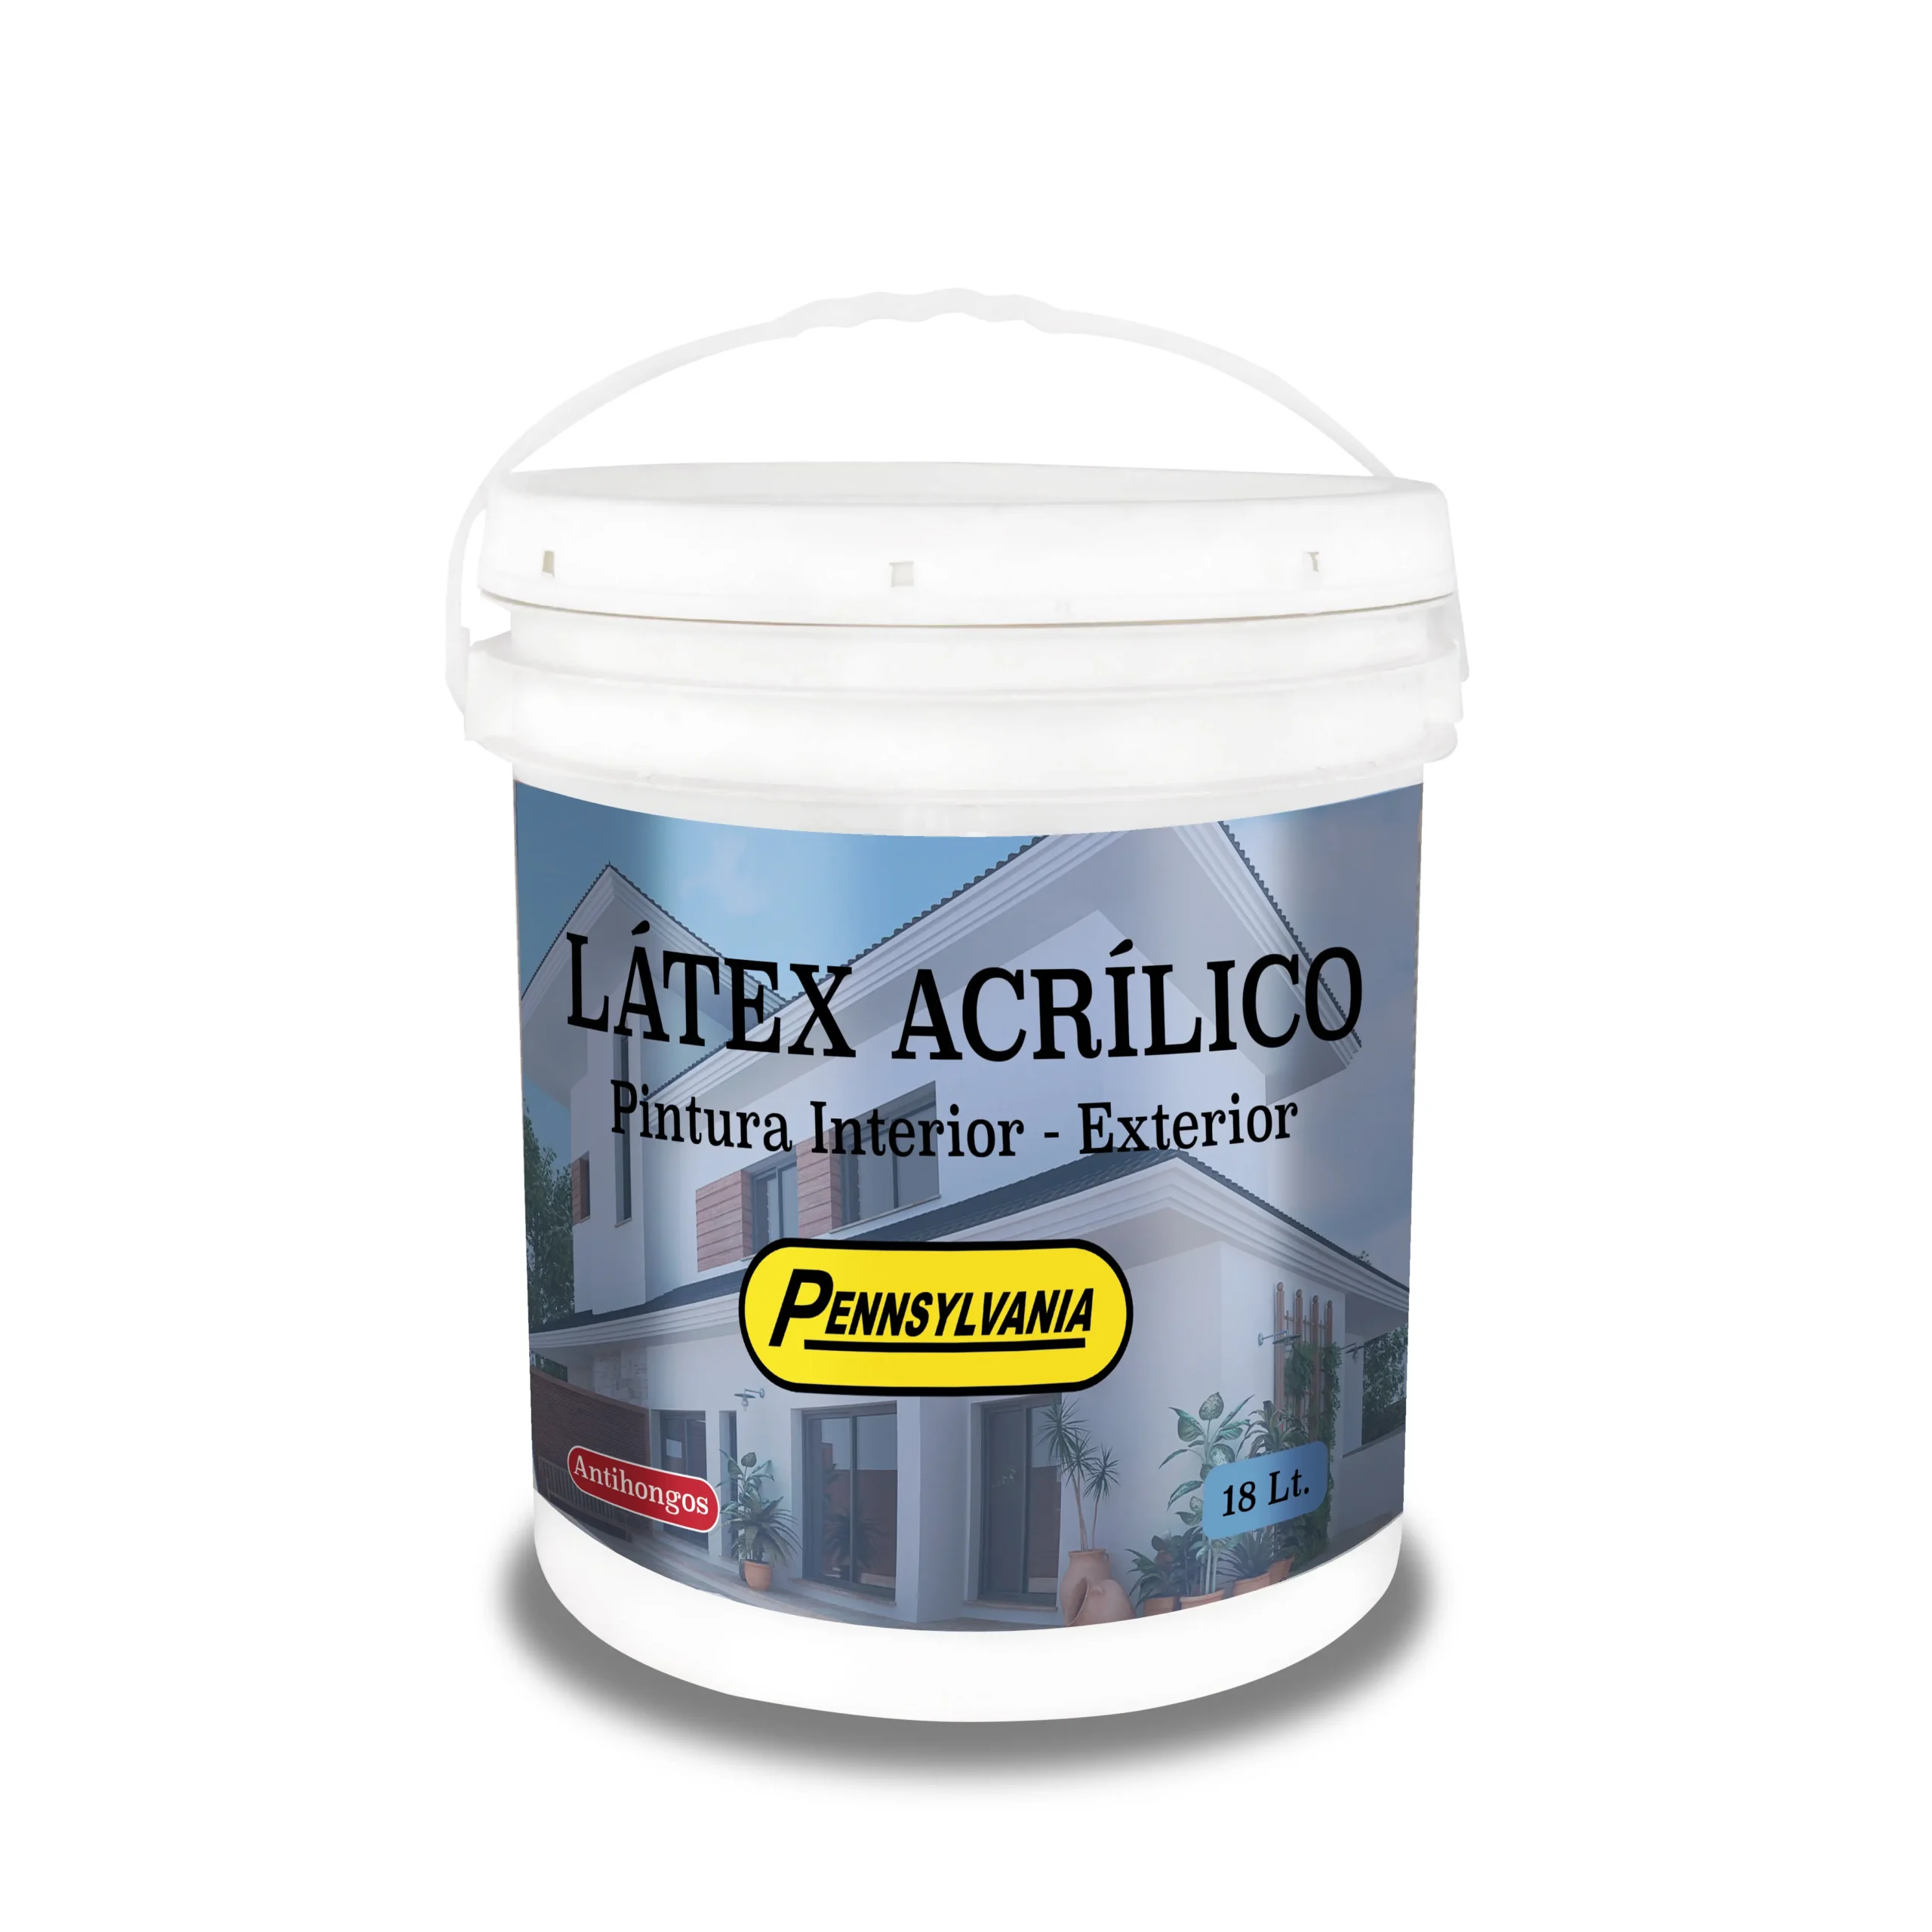 latex acrilico para que sirve - Dónde se aplica la pintura látex